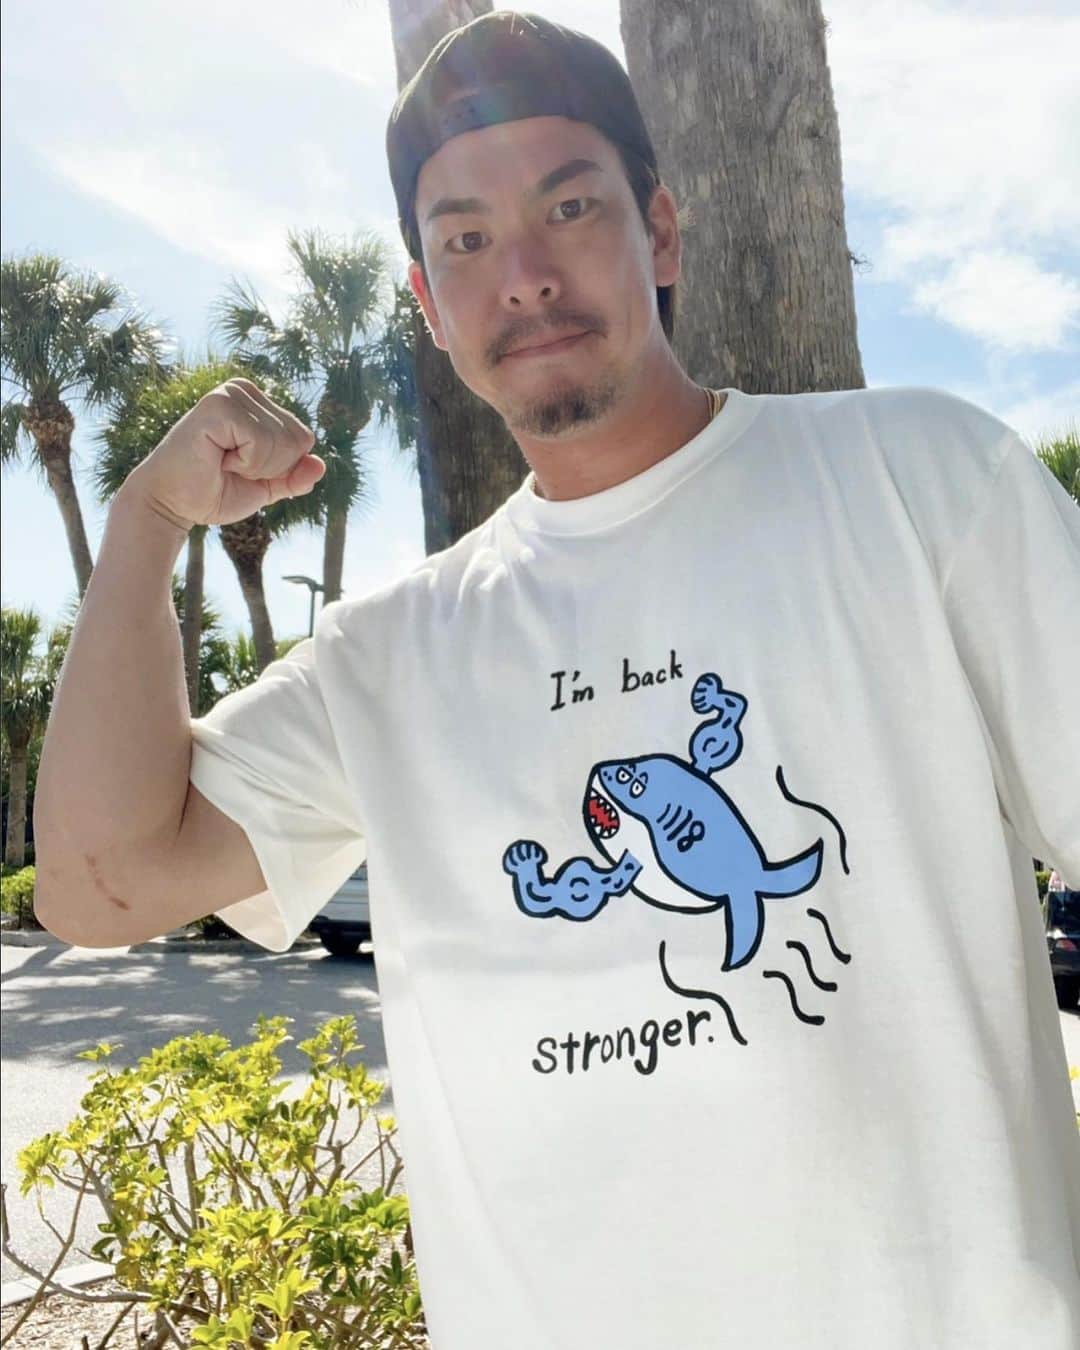 前田健太のインスタグラム：「マエケンオンラインストア 約一年ぶりの新作です🙇‍♂️  僕がリハビリ中に目標にしていた 手術前より強くなって戻る。 という事で 『 I'm back stronger』を入れさせて頂きました！ そして絵は、マッチョなサメです。笑  みなさんぜひ復帰最初の商品を記念に 買って頂けたら嬉しいです🙇‍♂️笑  Tシャツの色は初めてのバニラホワイトなのでかわいく着て頂けると思います😂  販売は数日後から受注販売させて頂きます！またストーリーに載せます！ 今回も収益はすべて寄付させて頂きます🙇‍♂️  @maeken_18_onlinestore   #マエケンオンラインストア #新作 #お久しぶりです #マッチョ #サメ #みなさん #着てください」